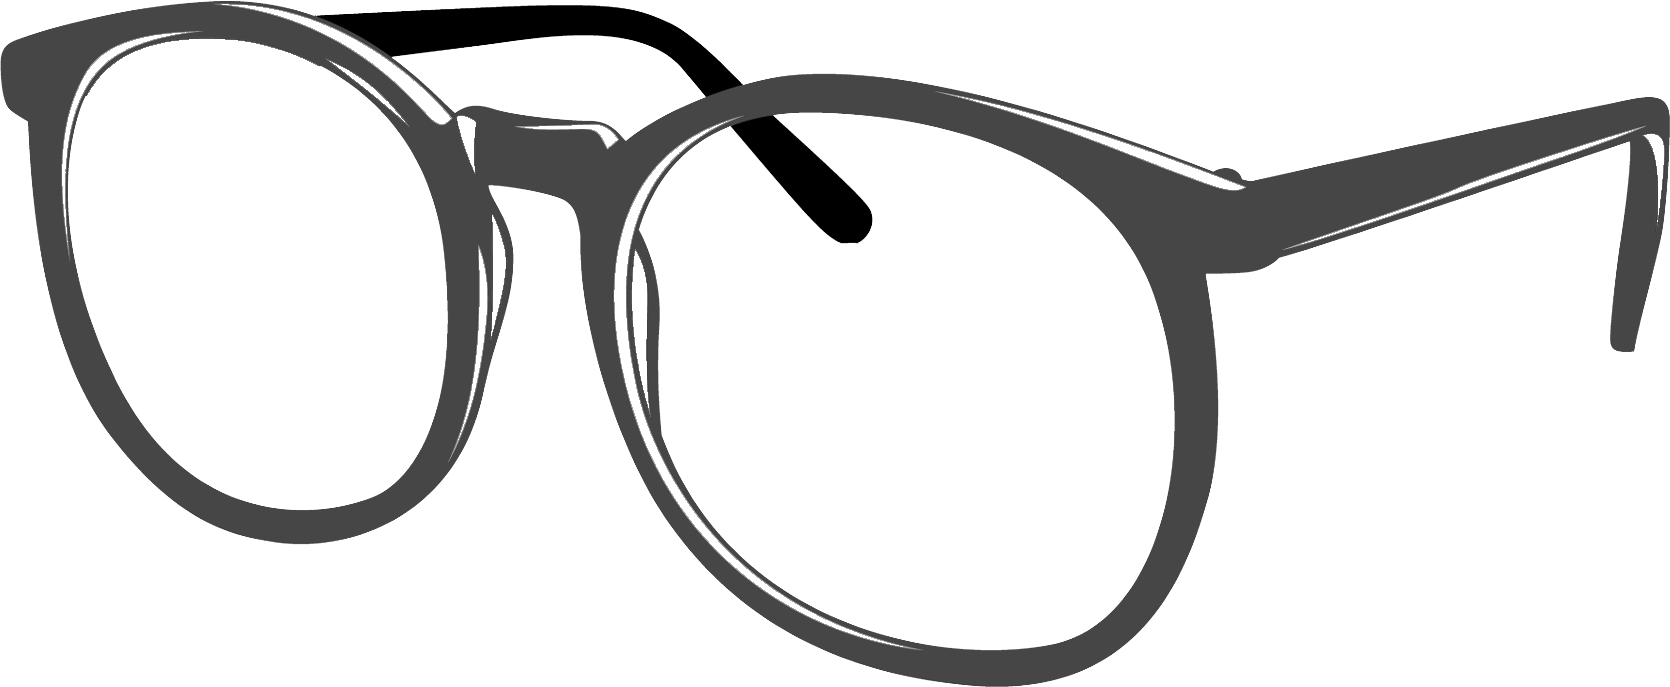 Glasses clipart 5 - Glasses Clip Art